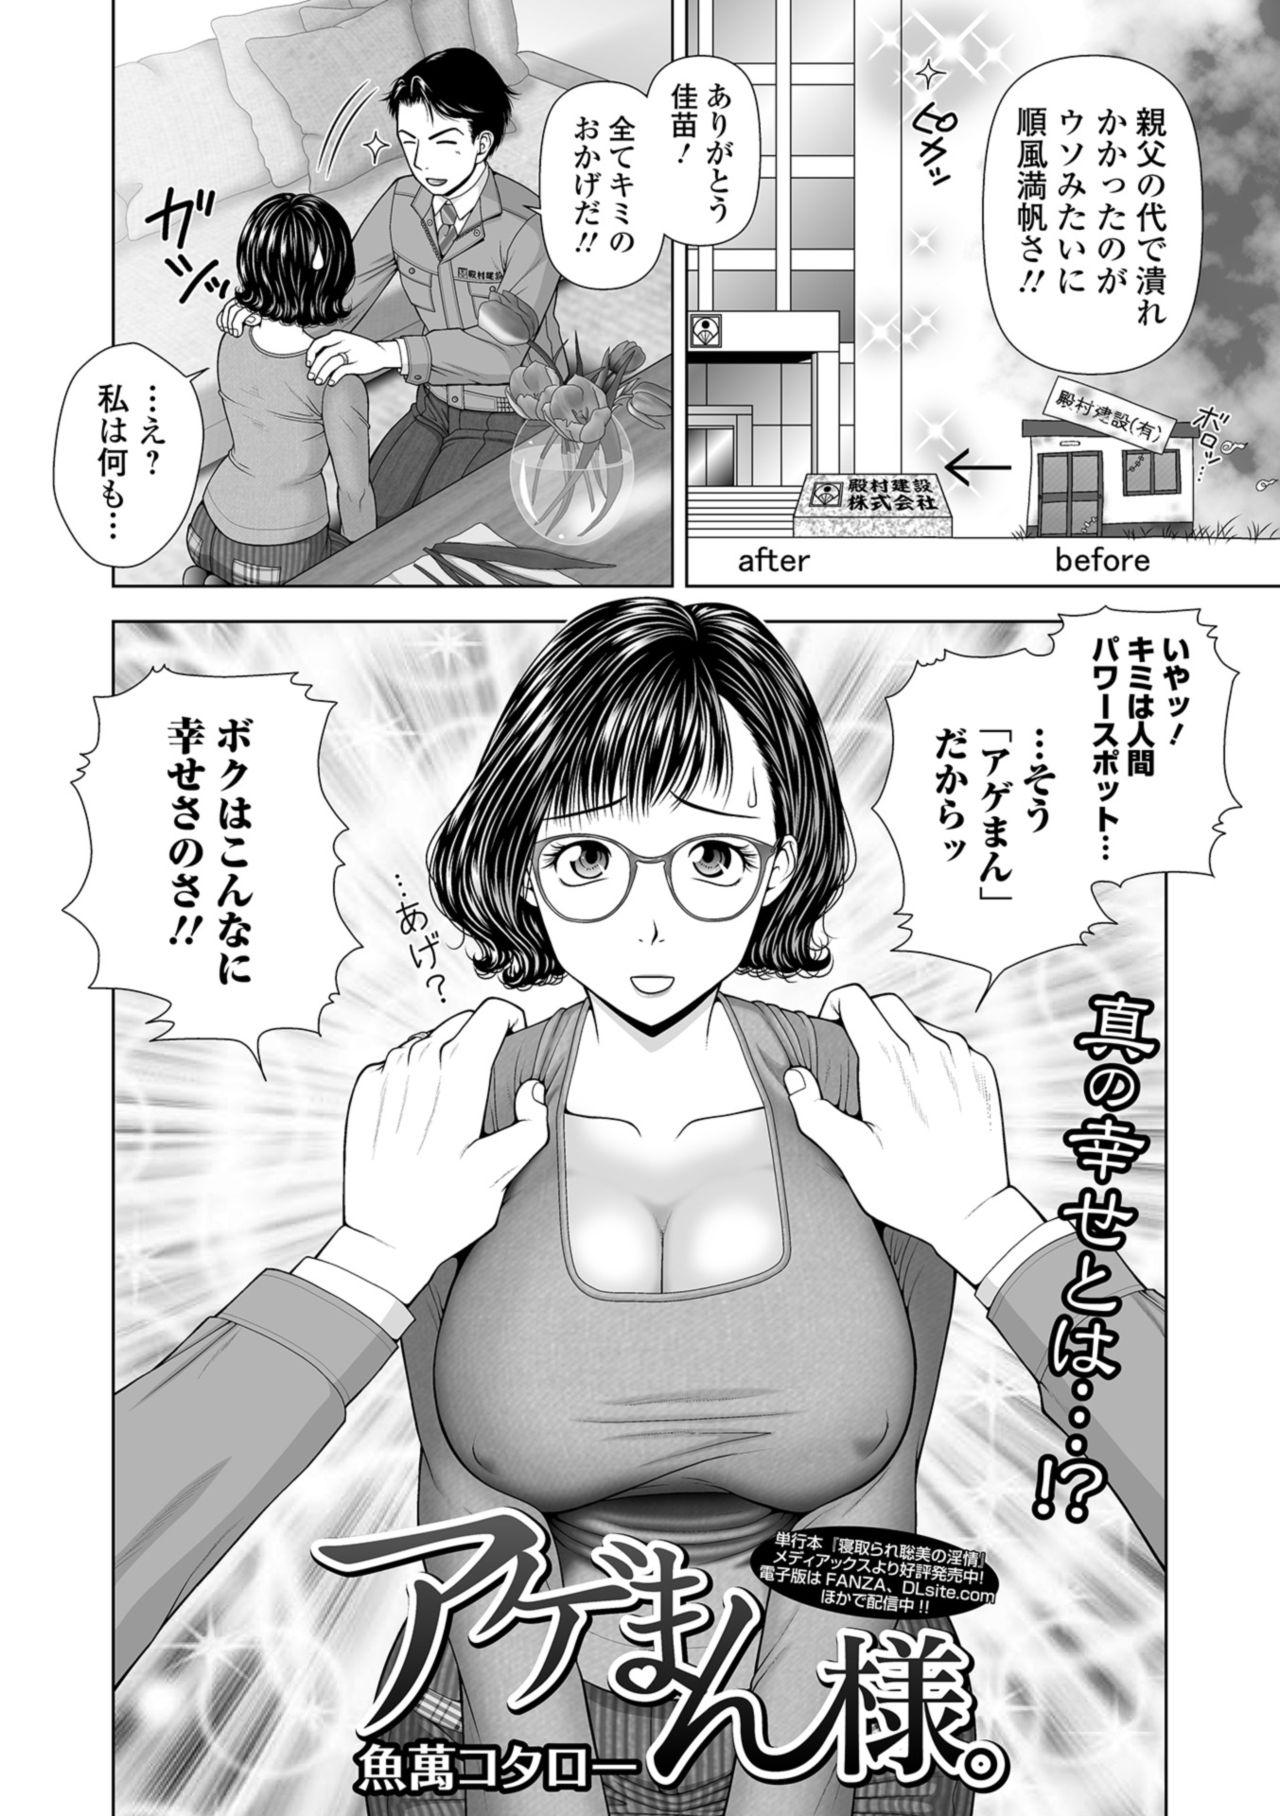 Web Comic Toutetsu Vol. 36 43